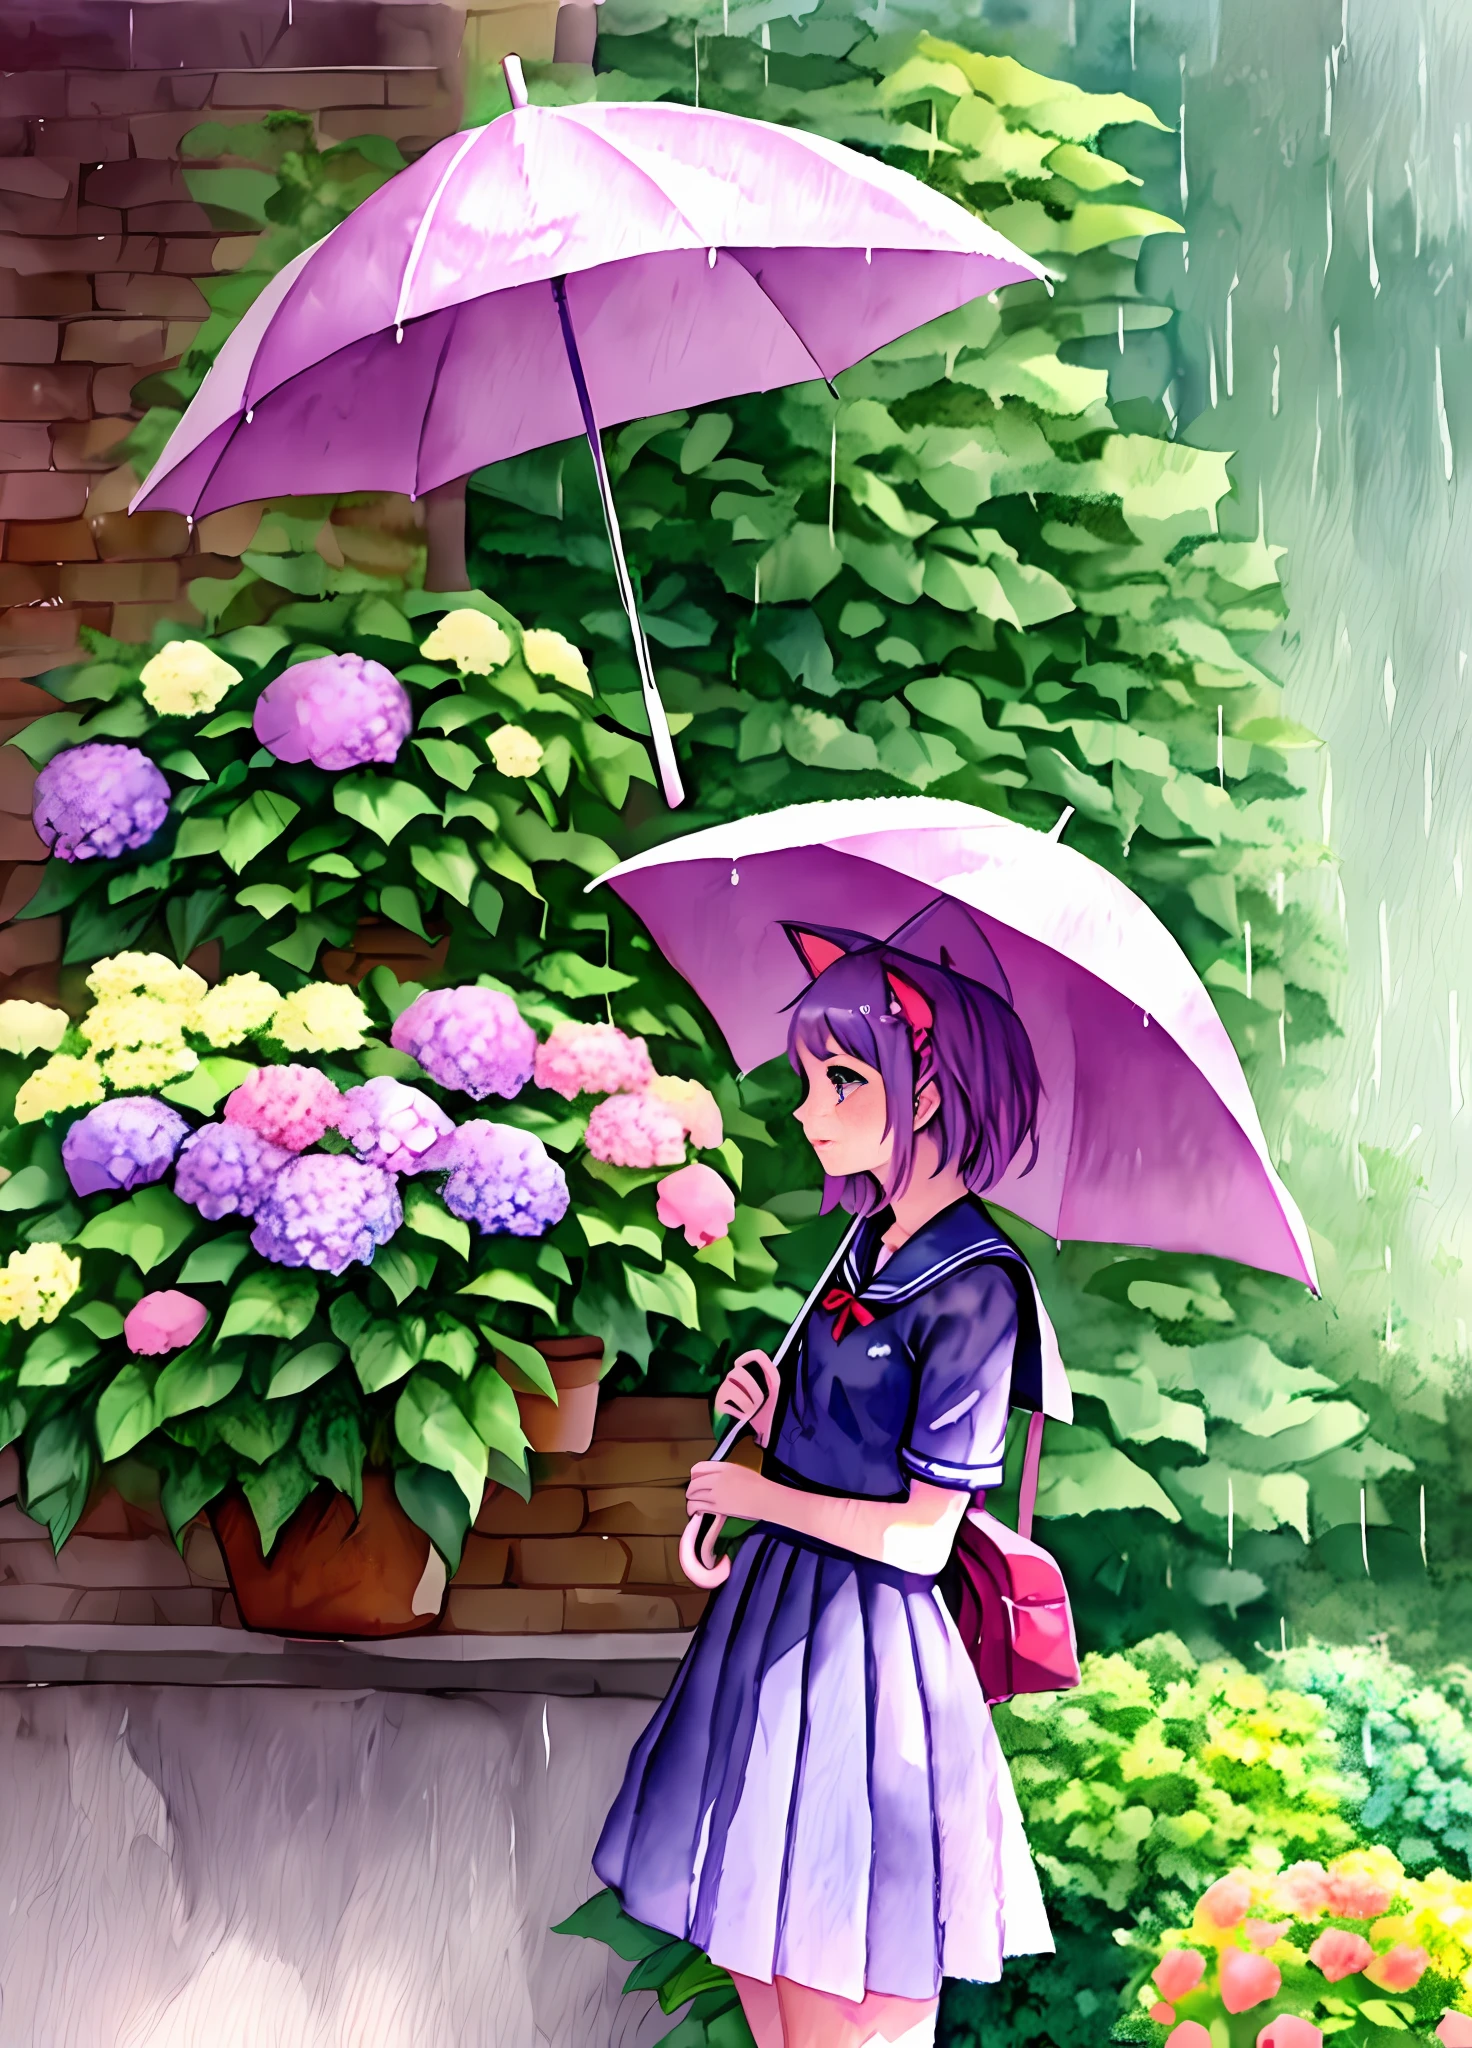 Ein Mädchen High School Schüler mit Katzenohren und eine süße Atmosphäre ist in einem Aquarell dargestellt. Das Gemälde zeigt einen regnerischen Tag, ein bunter Regenschirm, und eine lila Hortensie. Die Farbgebung ist pastellfarben.((seifuku))